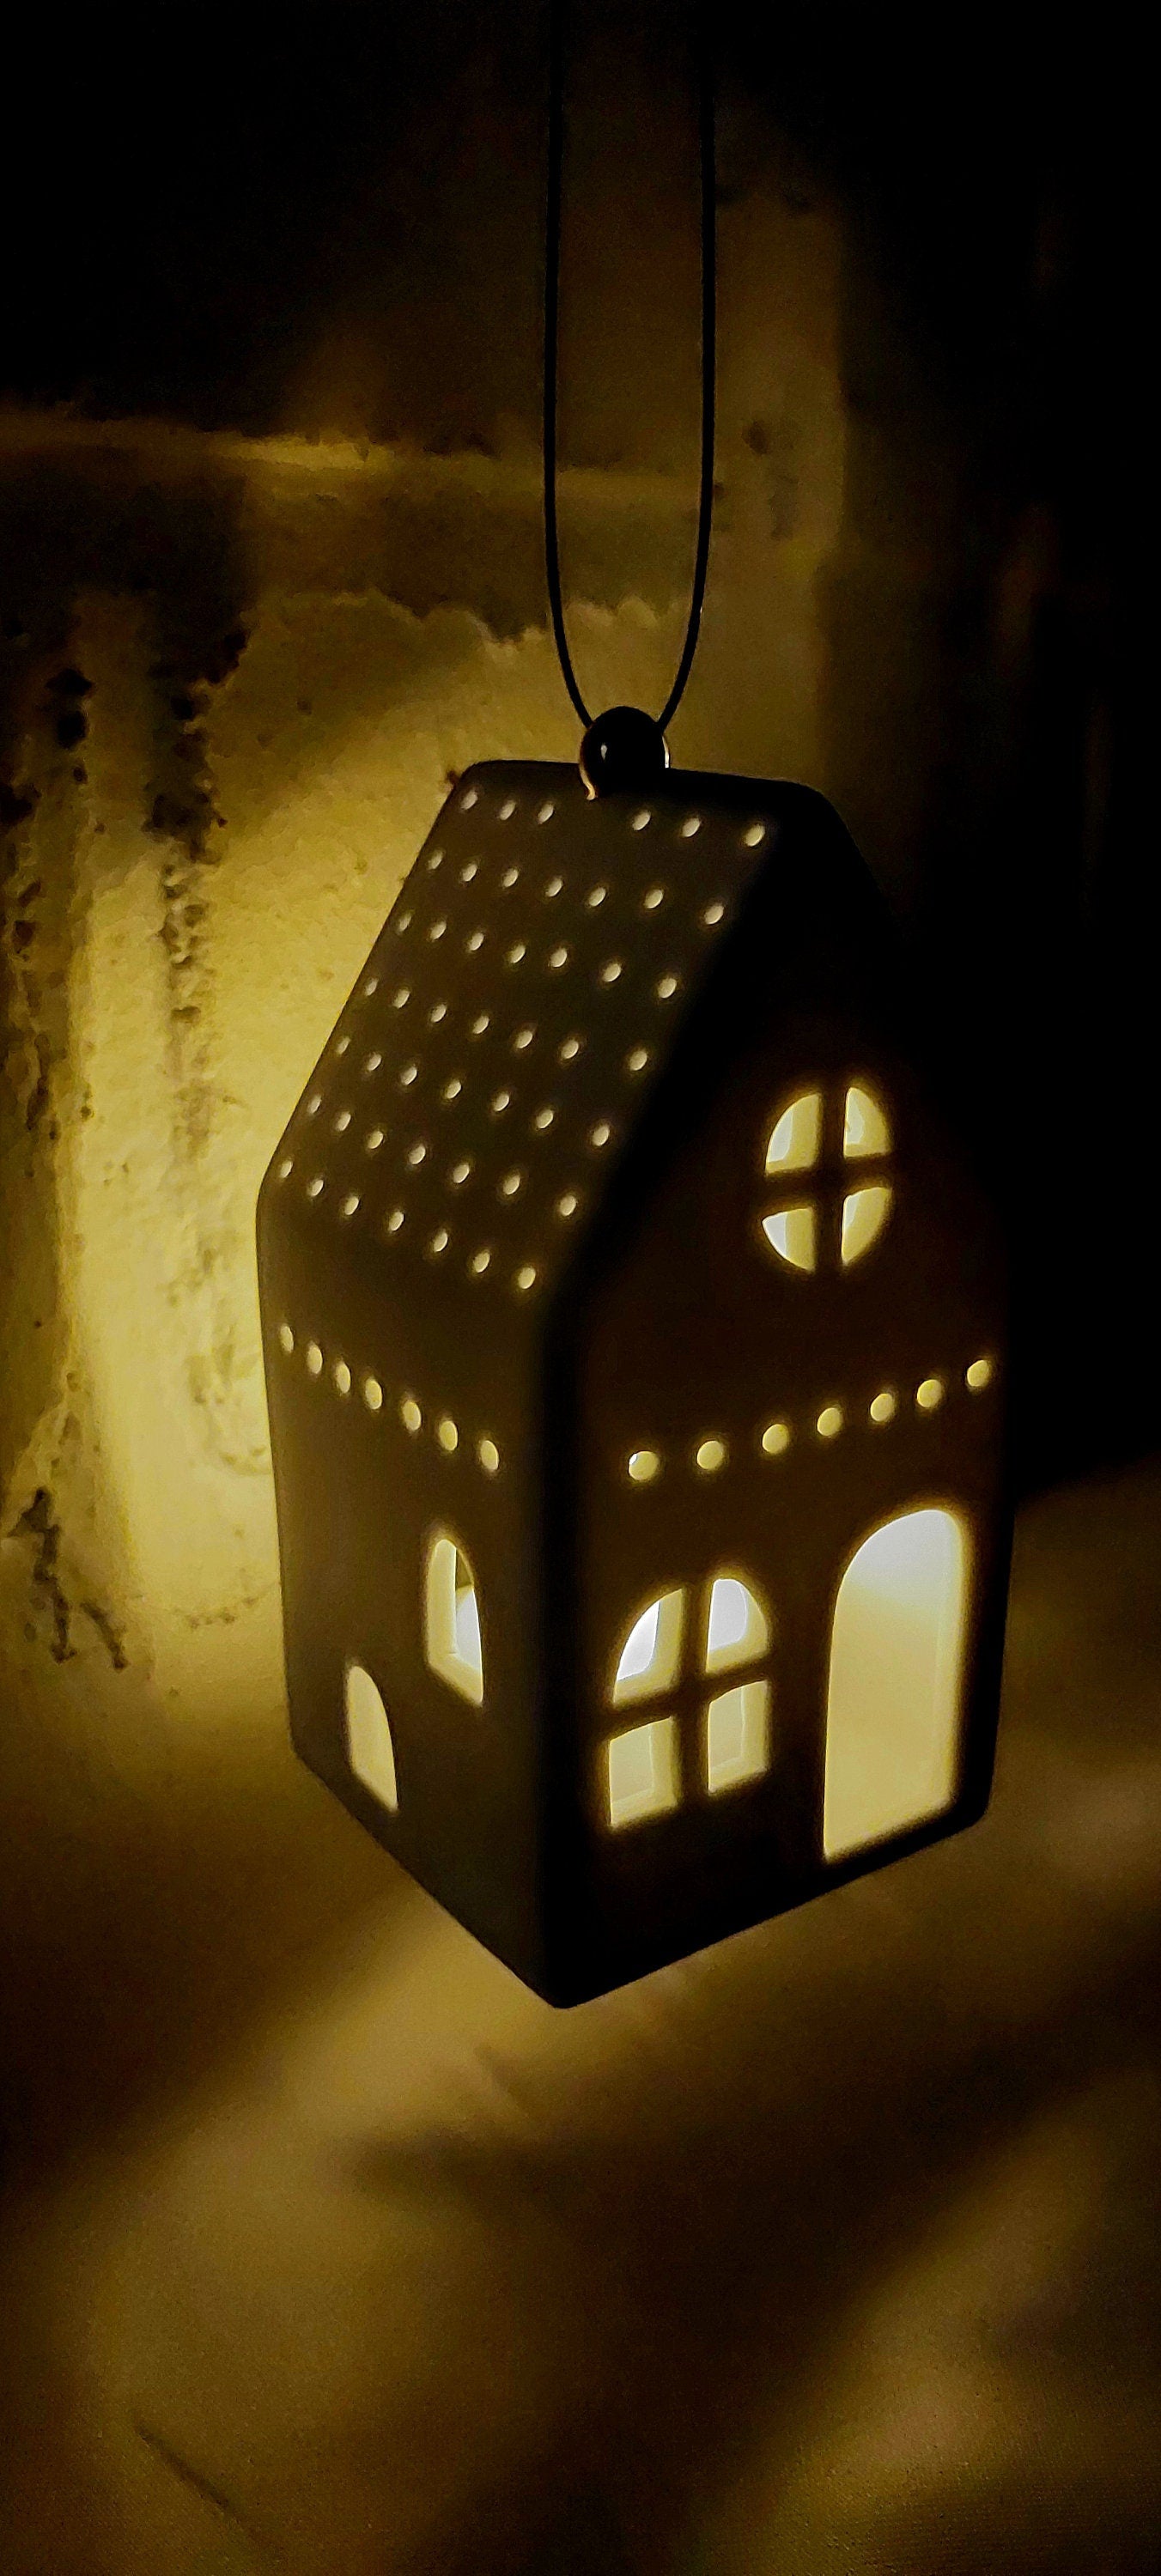 Lichthaus ECKIG  aus weißem Porzellan handgemacht sorgt für wohnliche Akzente..., Teelicht, Kerzenhalter